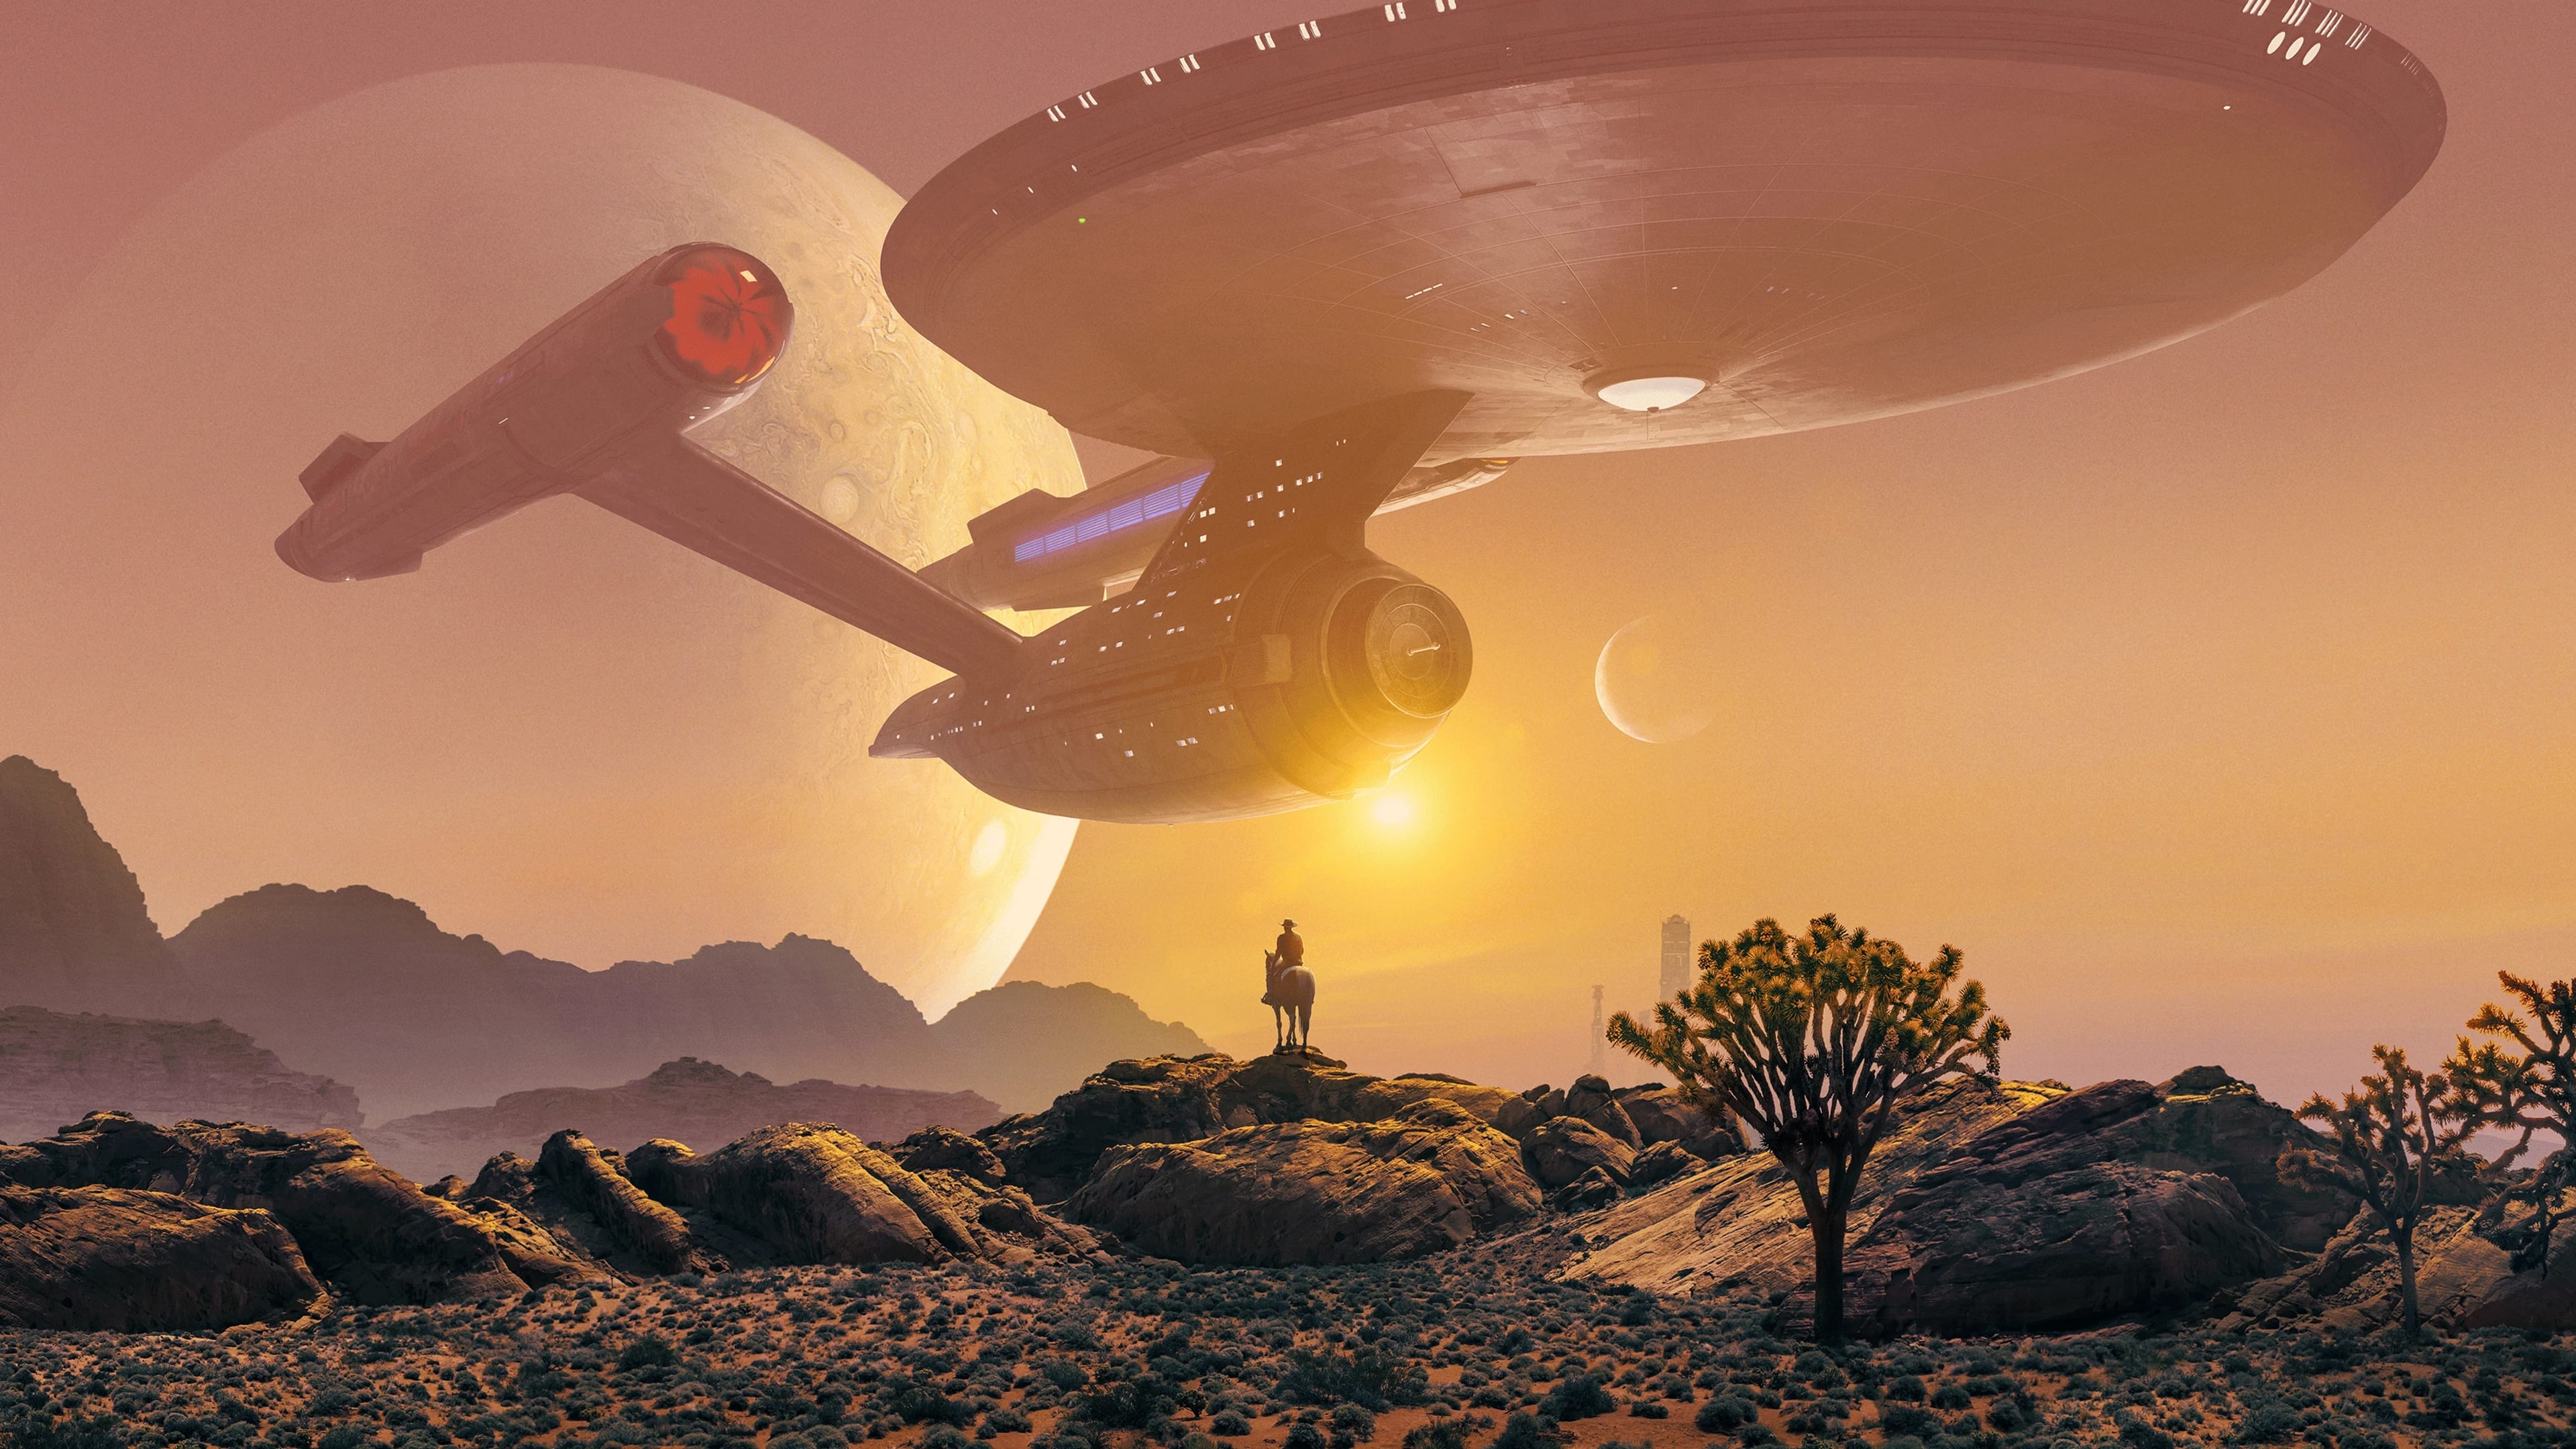 4K Star Trek: Strange New Worlds Wallpaper and Background Image